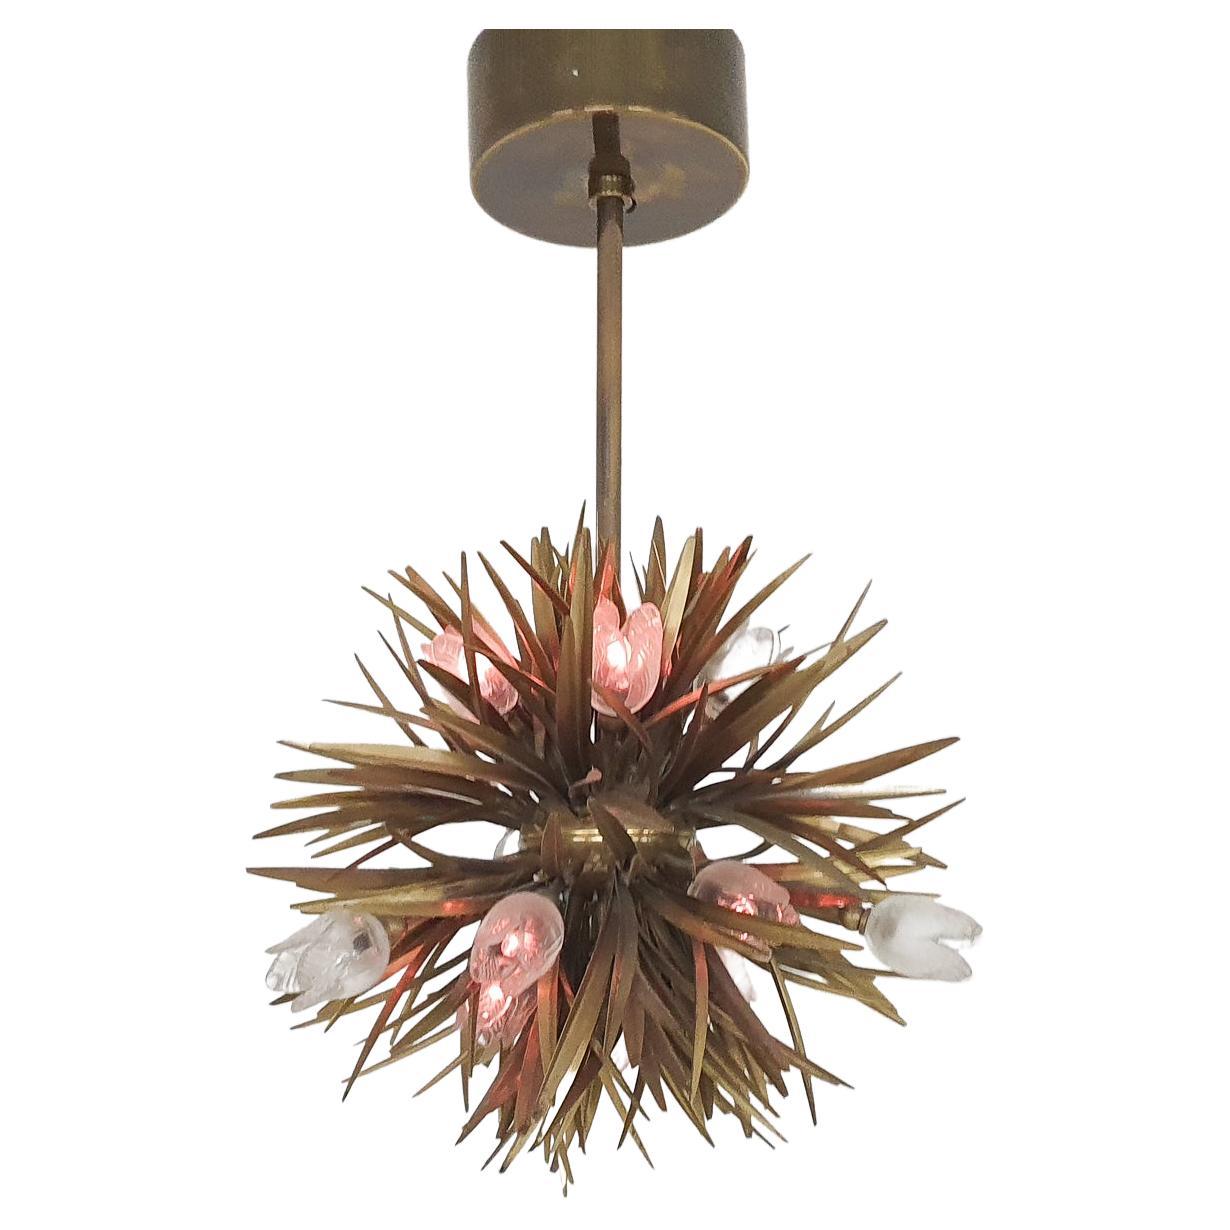 Brass florentine chandelier with glass flower details.